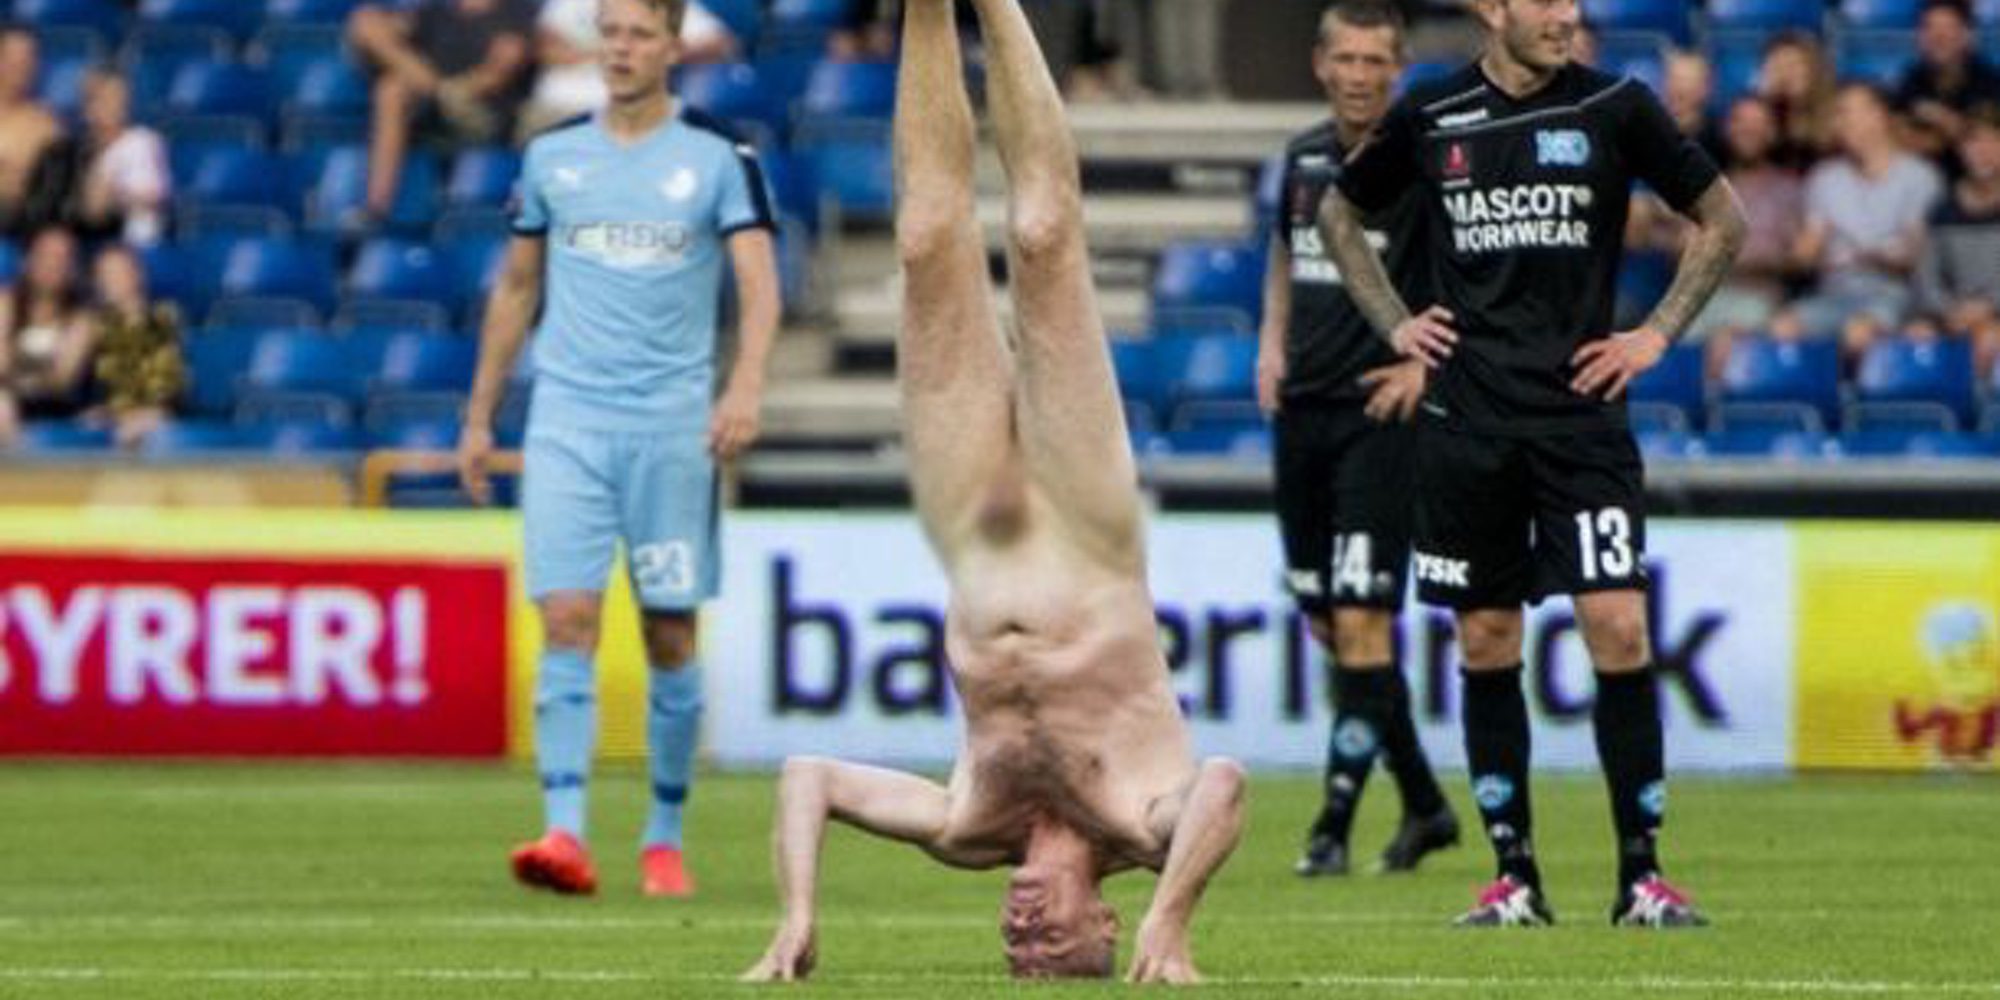 Escándalo en un partido de fútbol de Dinamarca: El exjugador Lars Elstrup salta al campo desnudo